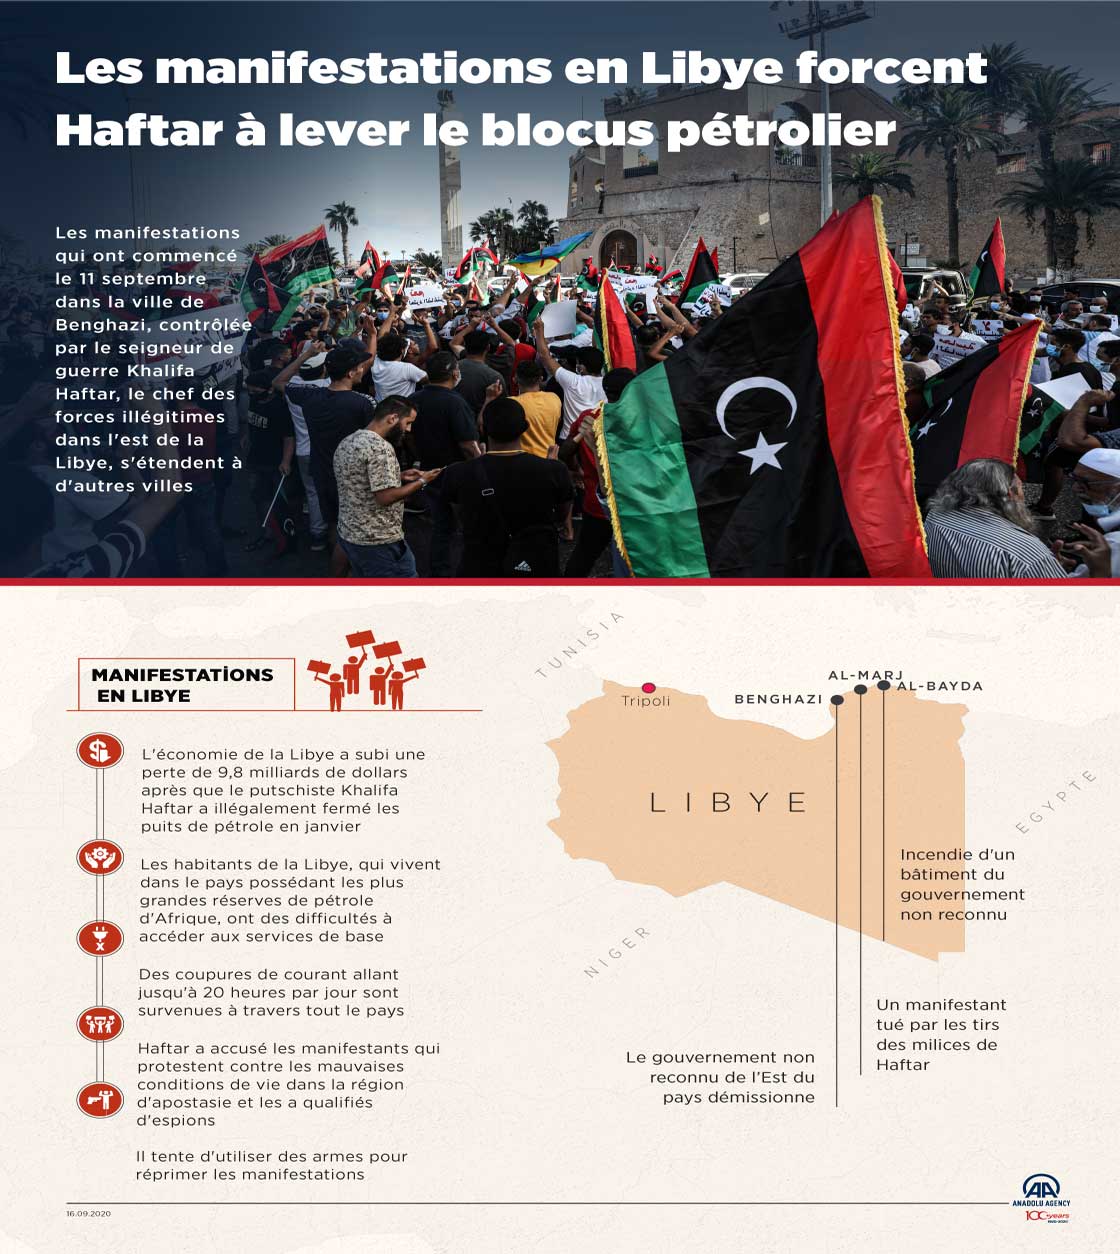 Les manifestations en Libye forcent Haftar à lever le blocus pétrolier